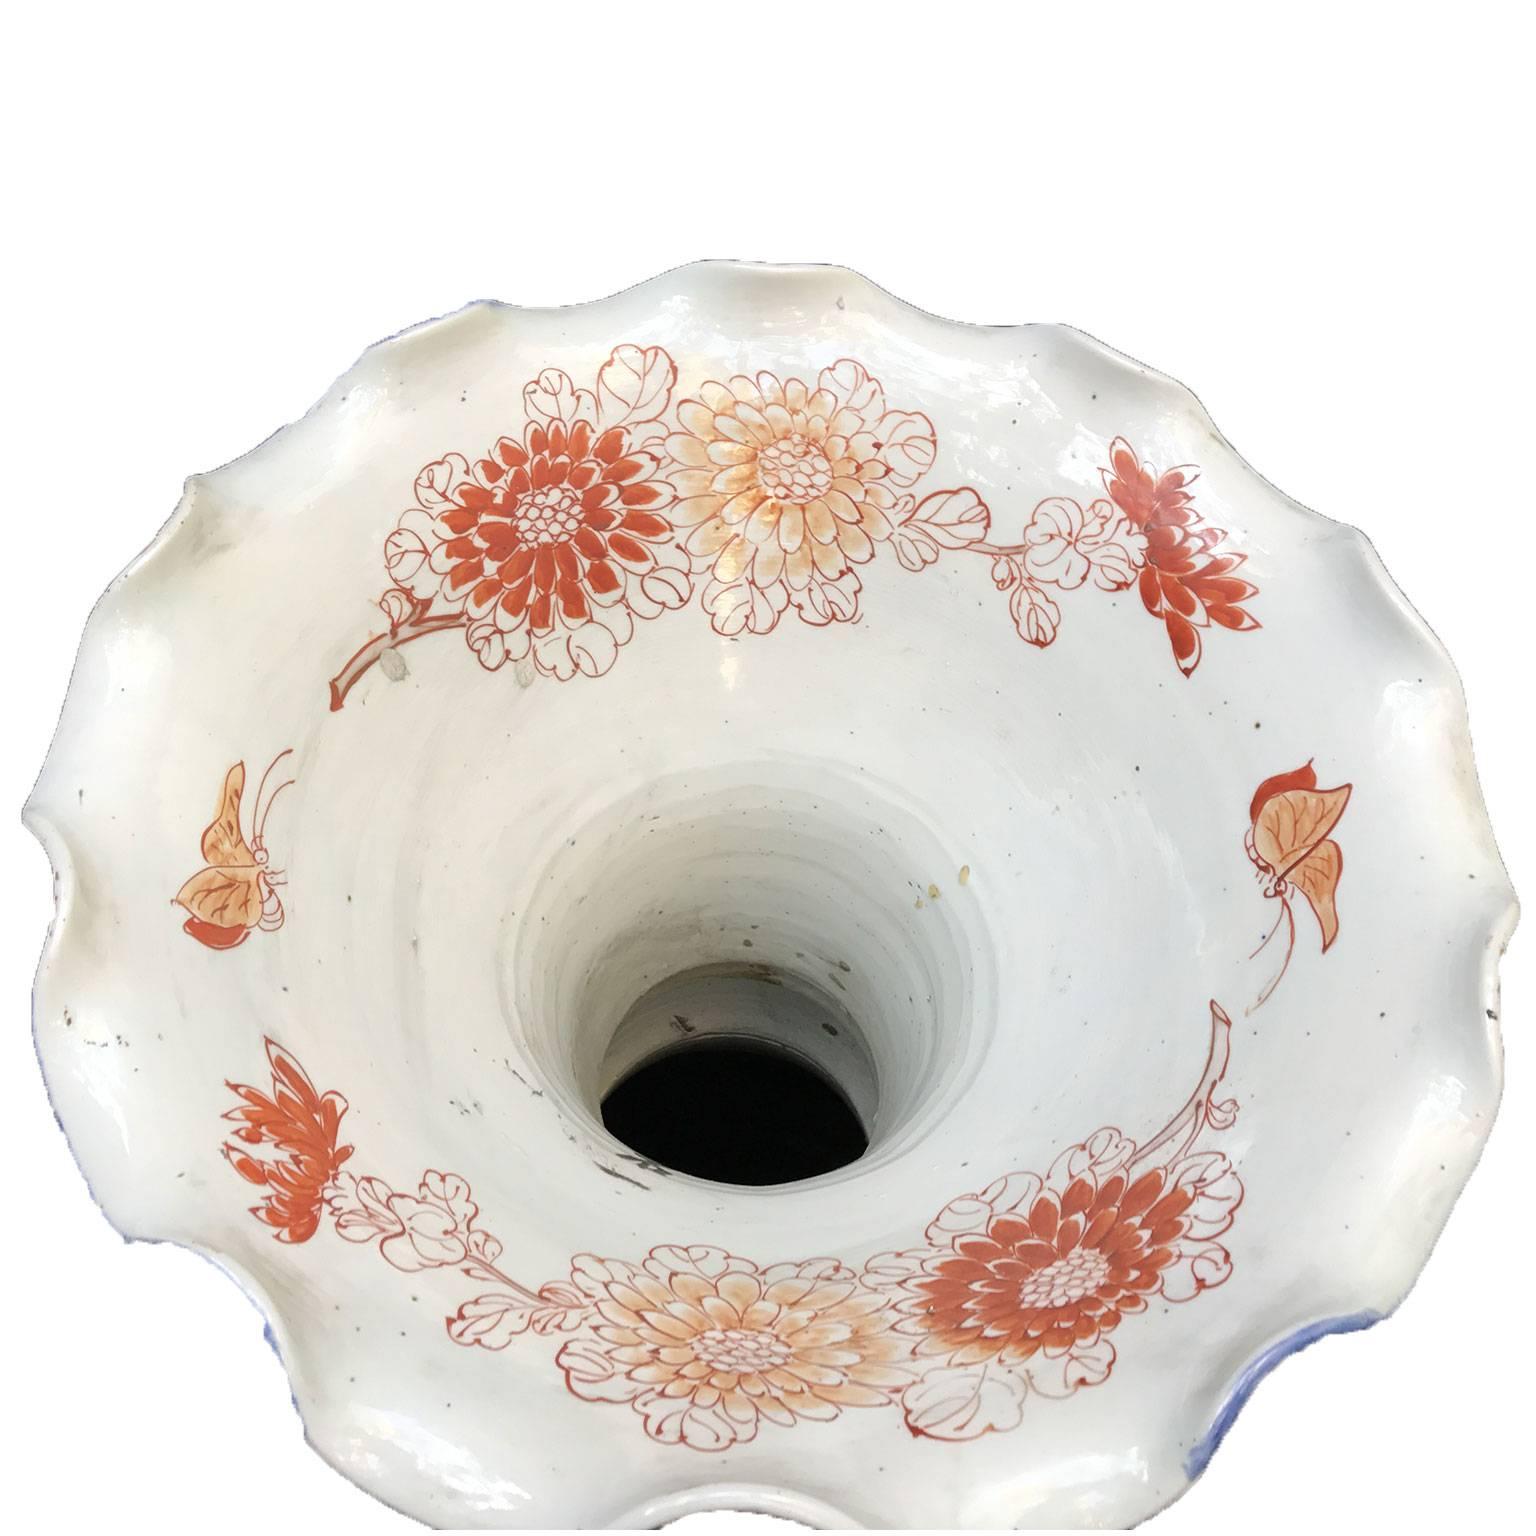 Pair of Large Imari Vases 19th Century Japanese Blue Red White Porcelain Vases 3